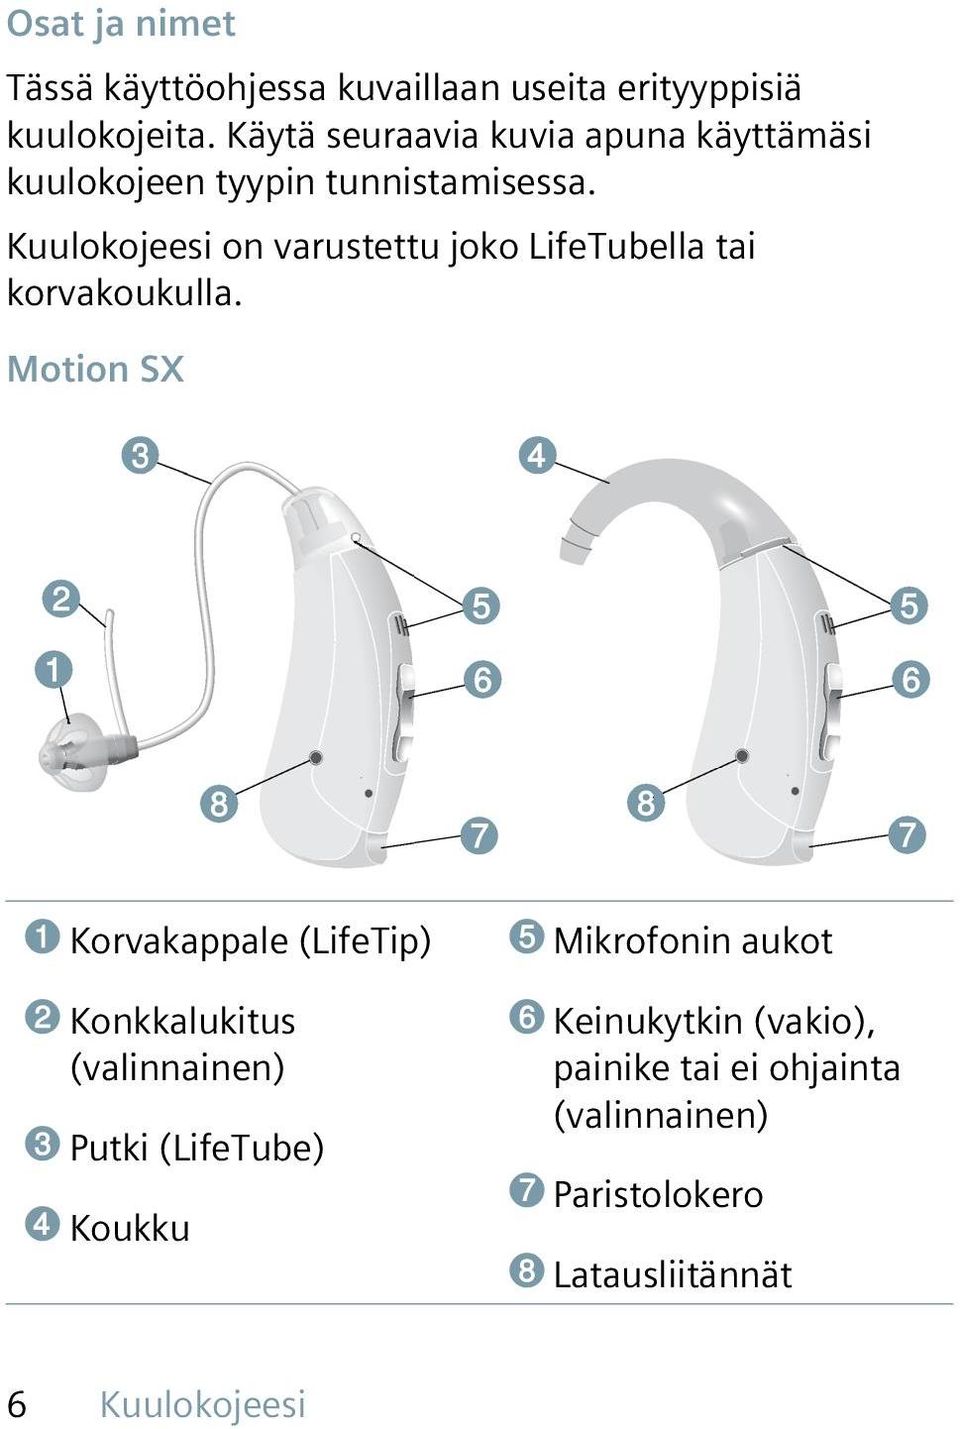 Kuulokojeesi on varustettu joko LifeTubella tai korvakoukulla.